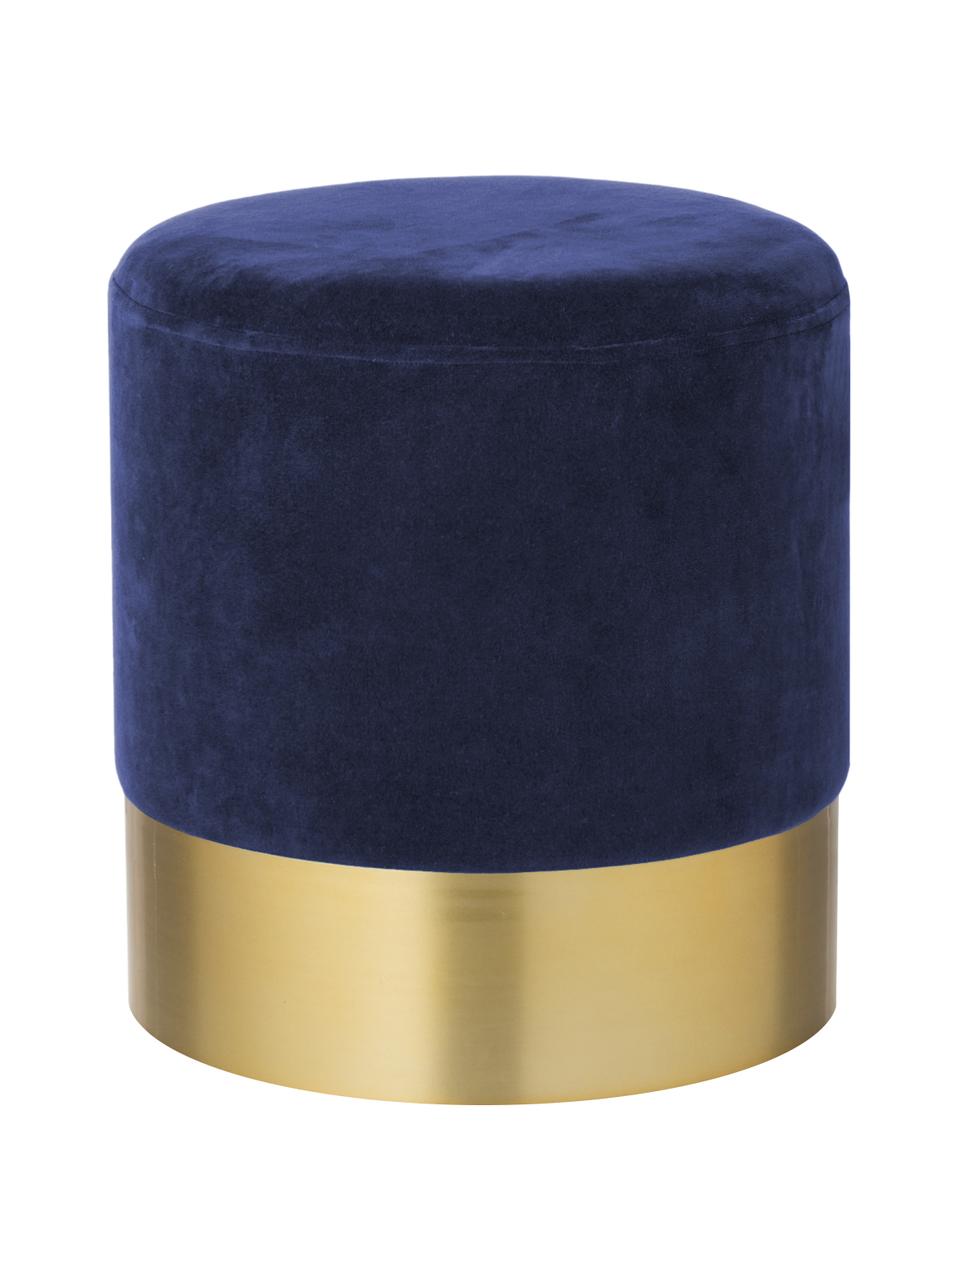 Pouf in velluto Harlow, Rivestimento: velluto di cotone, Blu navy, dorato, Ø 38 x Alt. 42 cm